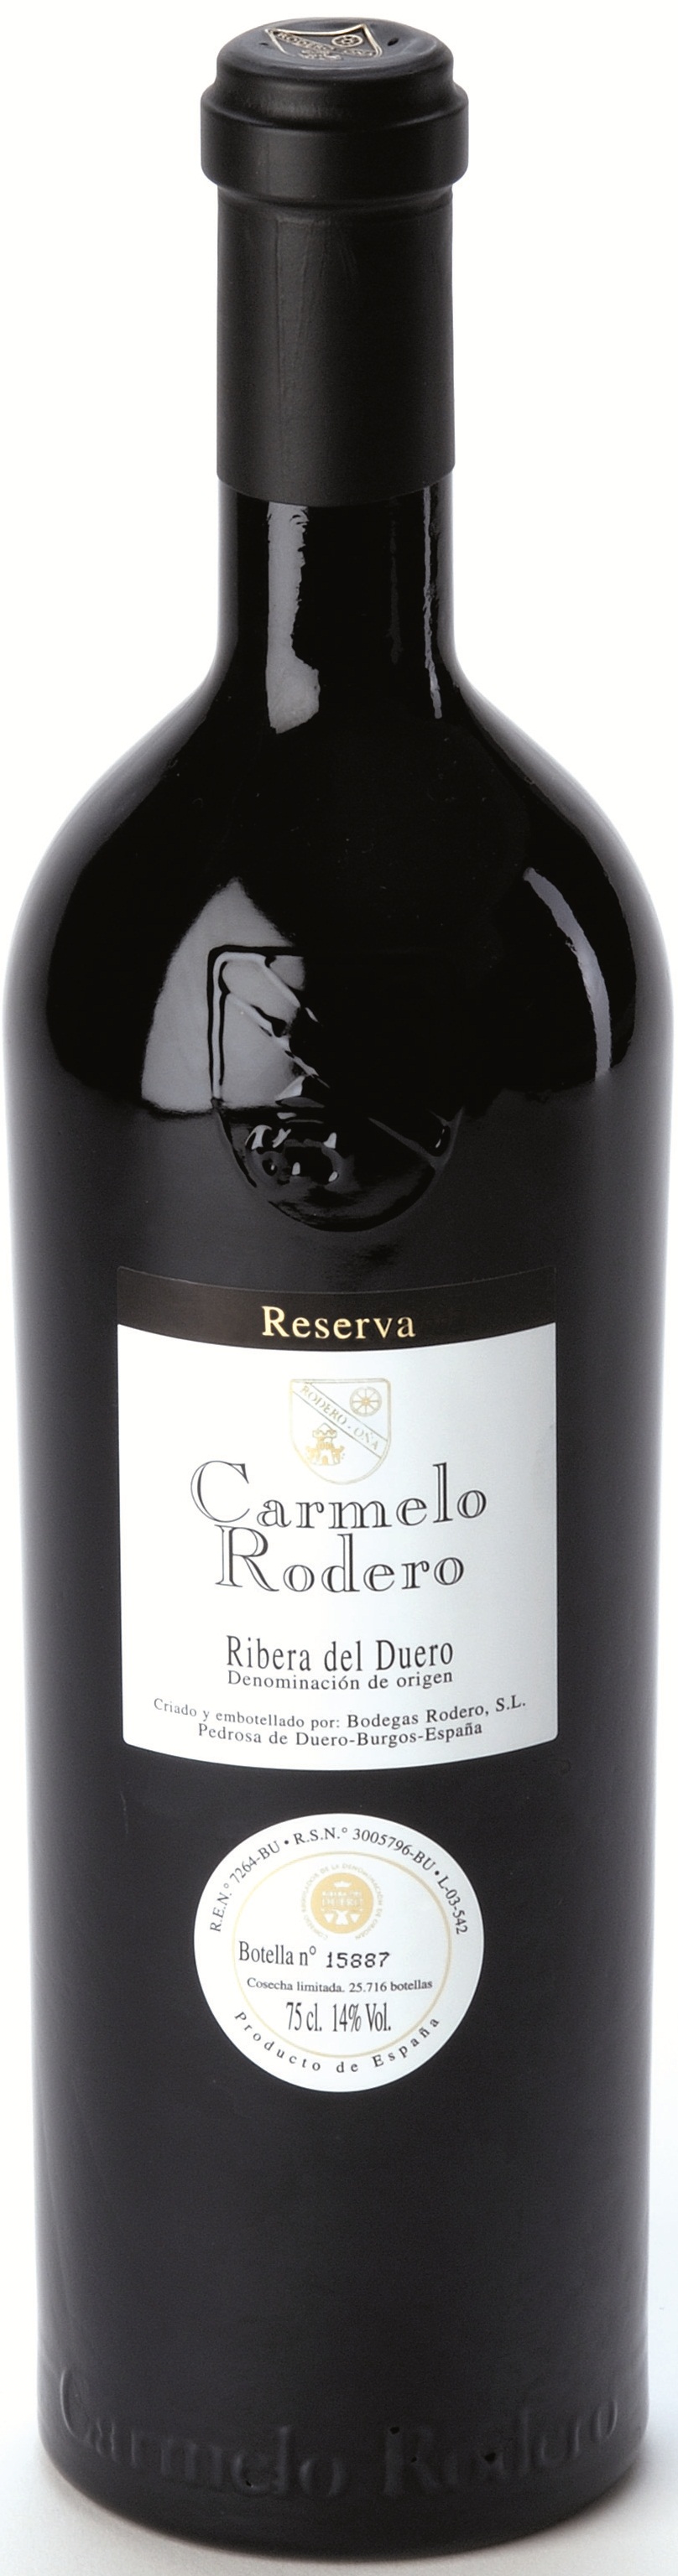 Bild von der Weinflasche Carmelo Rodero Reserva